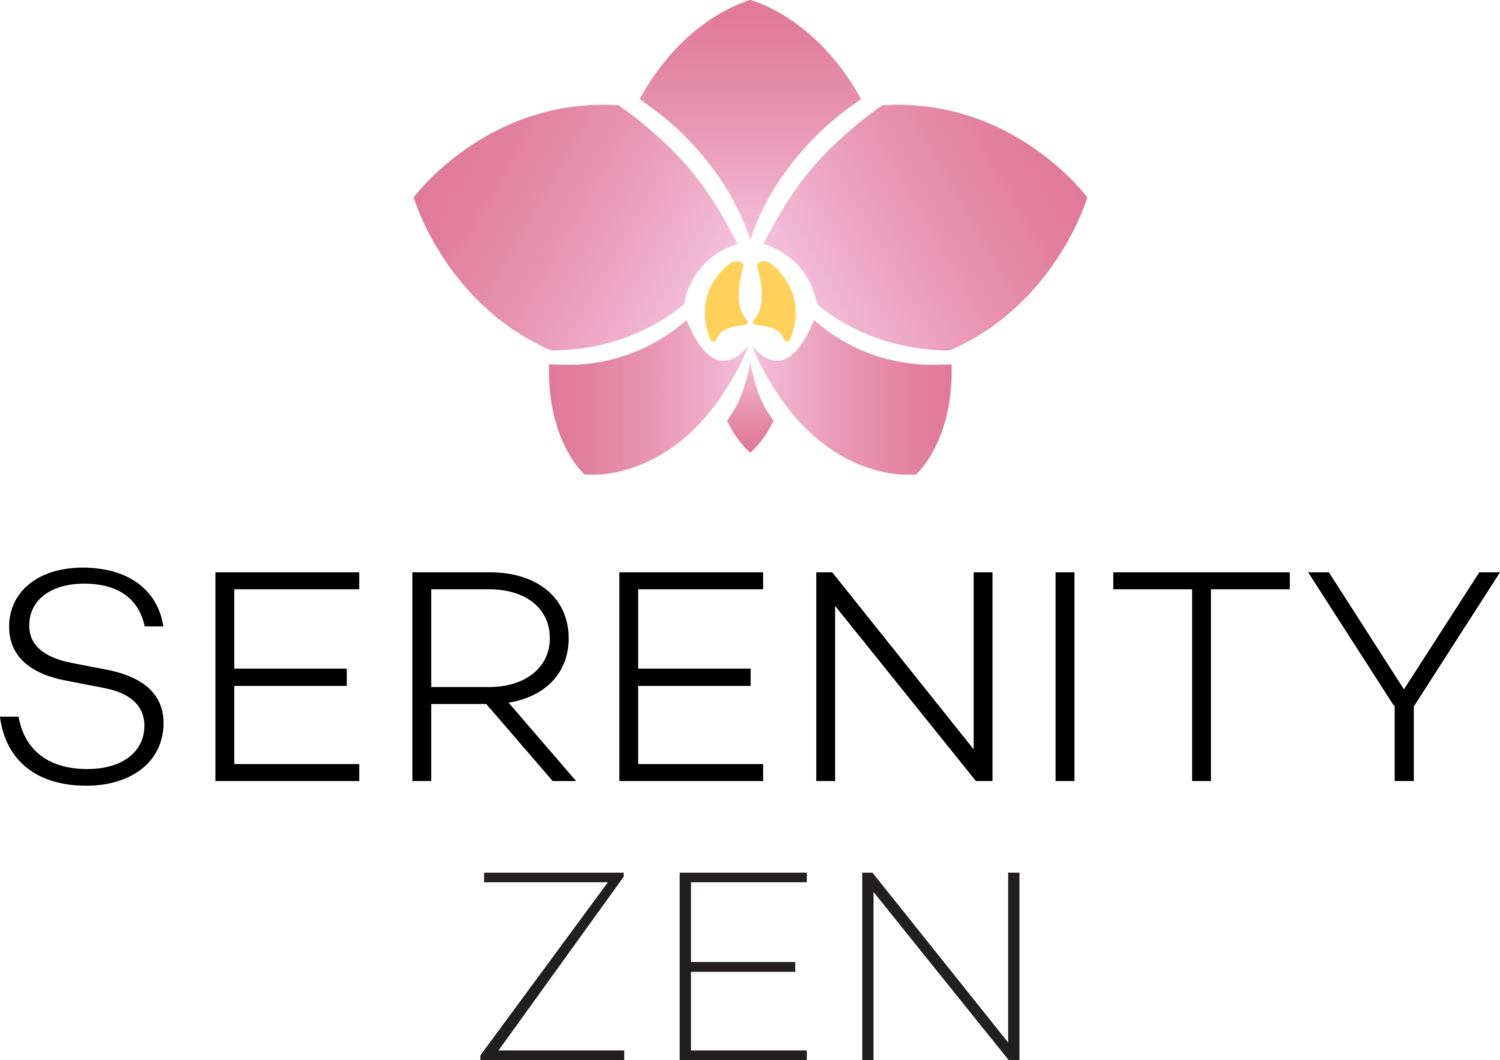 Serenity Zen | Massage SPA